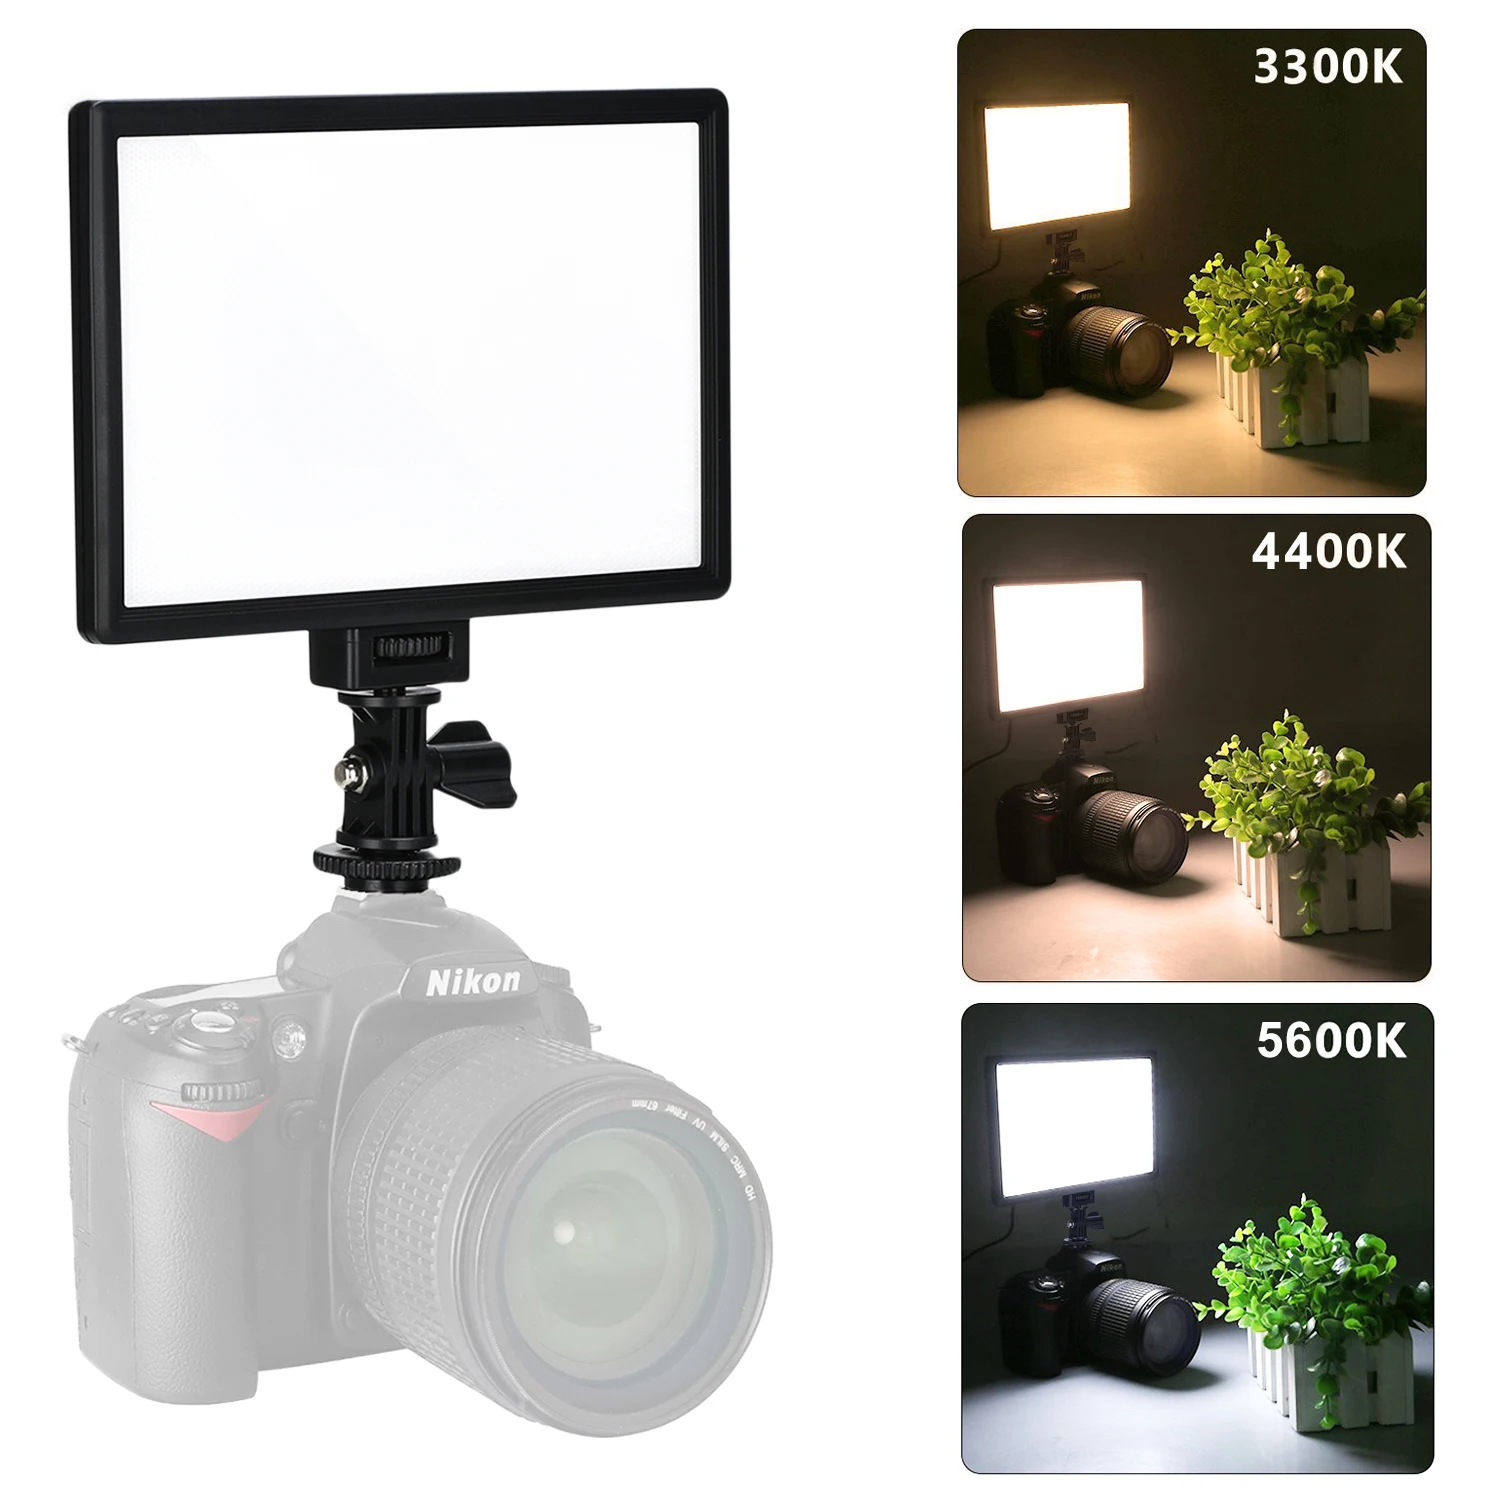 オンライン 販売 VILTROX LEDビデオライト 10インチ 円形 撮影用ライト VL-500T 超薄型 二色温度 3300K〜5600K C  カメラアクセサリー